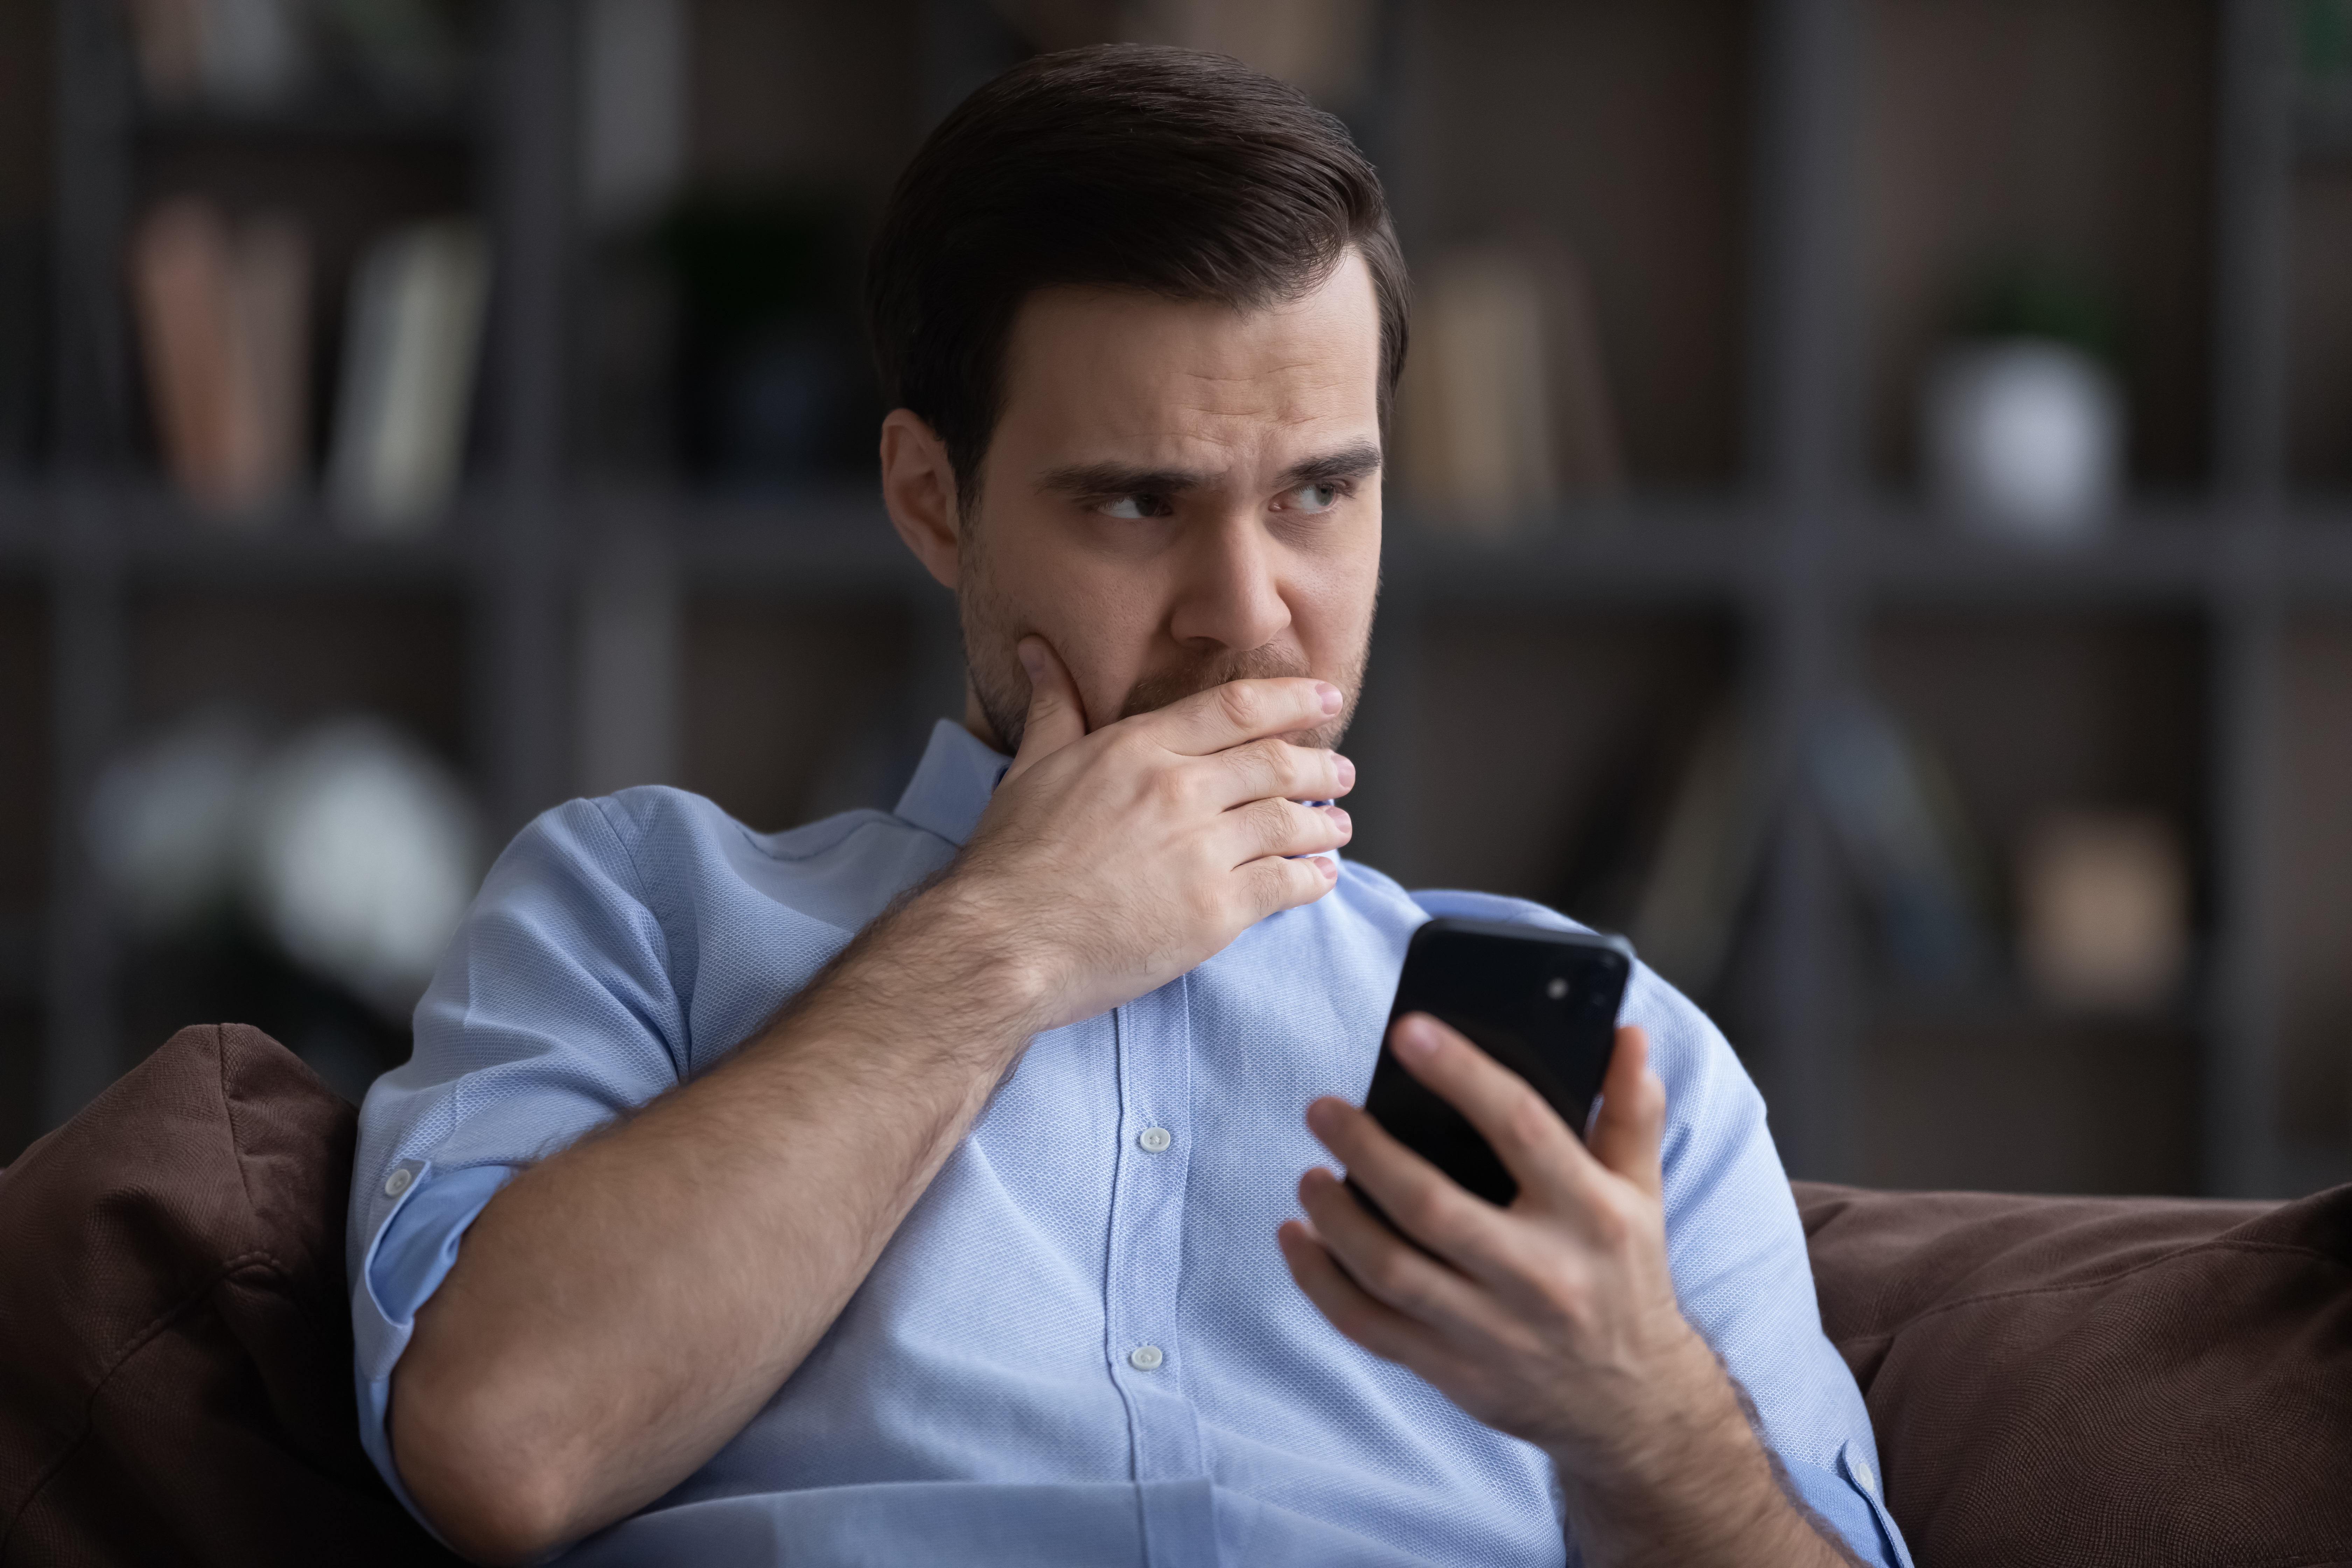 Ein verzweifelter Mann, der ein Smartphone hält | Quelle: Shutterstock